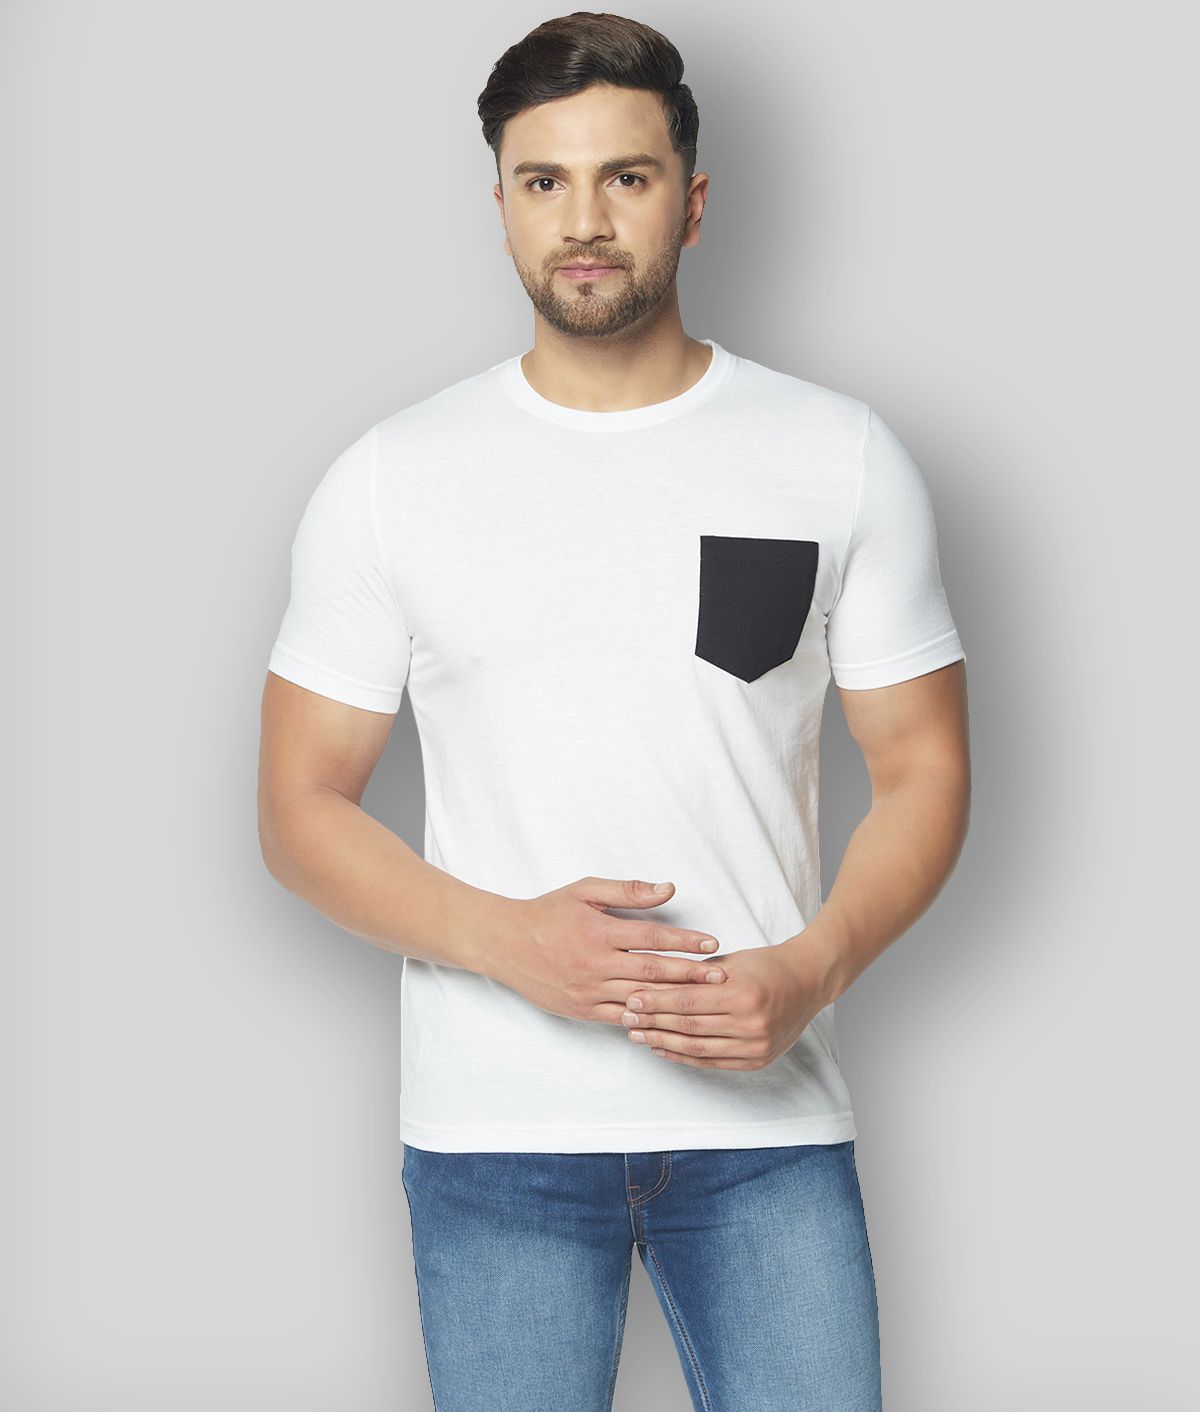     			Glito - White Cotton Blend Slim Fit Men's T-Shirt ( Pack of 1 )